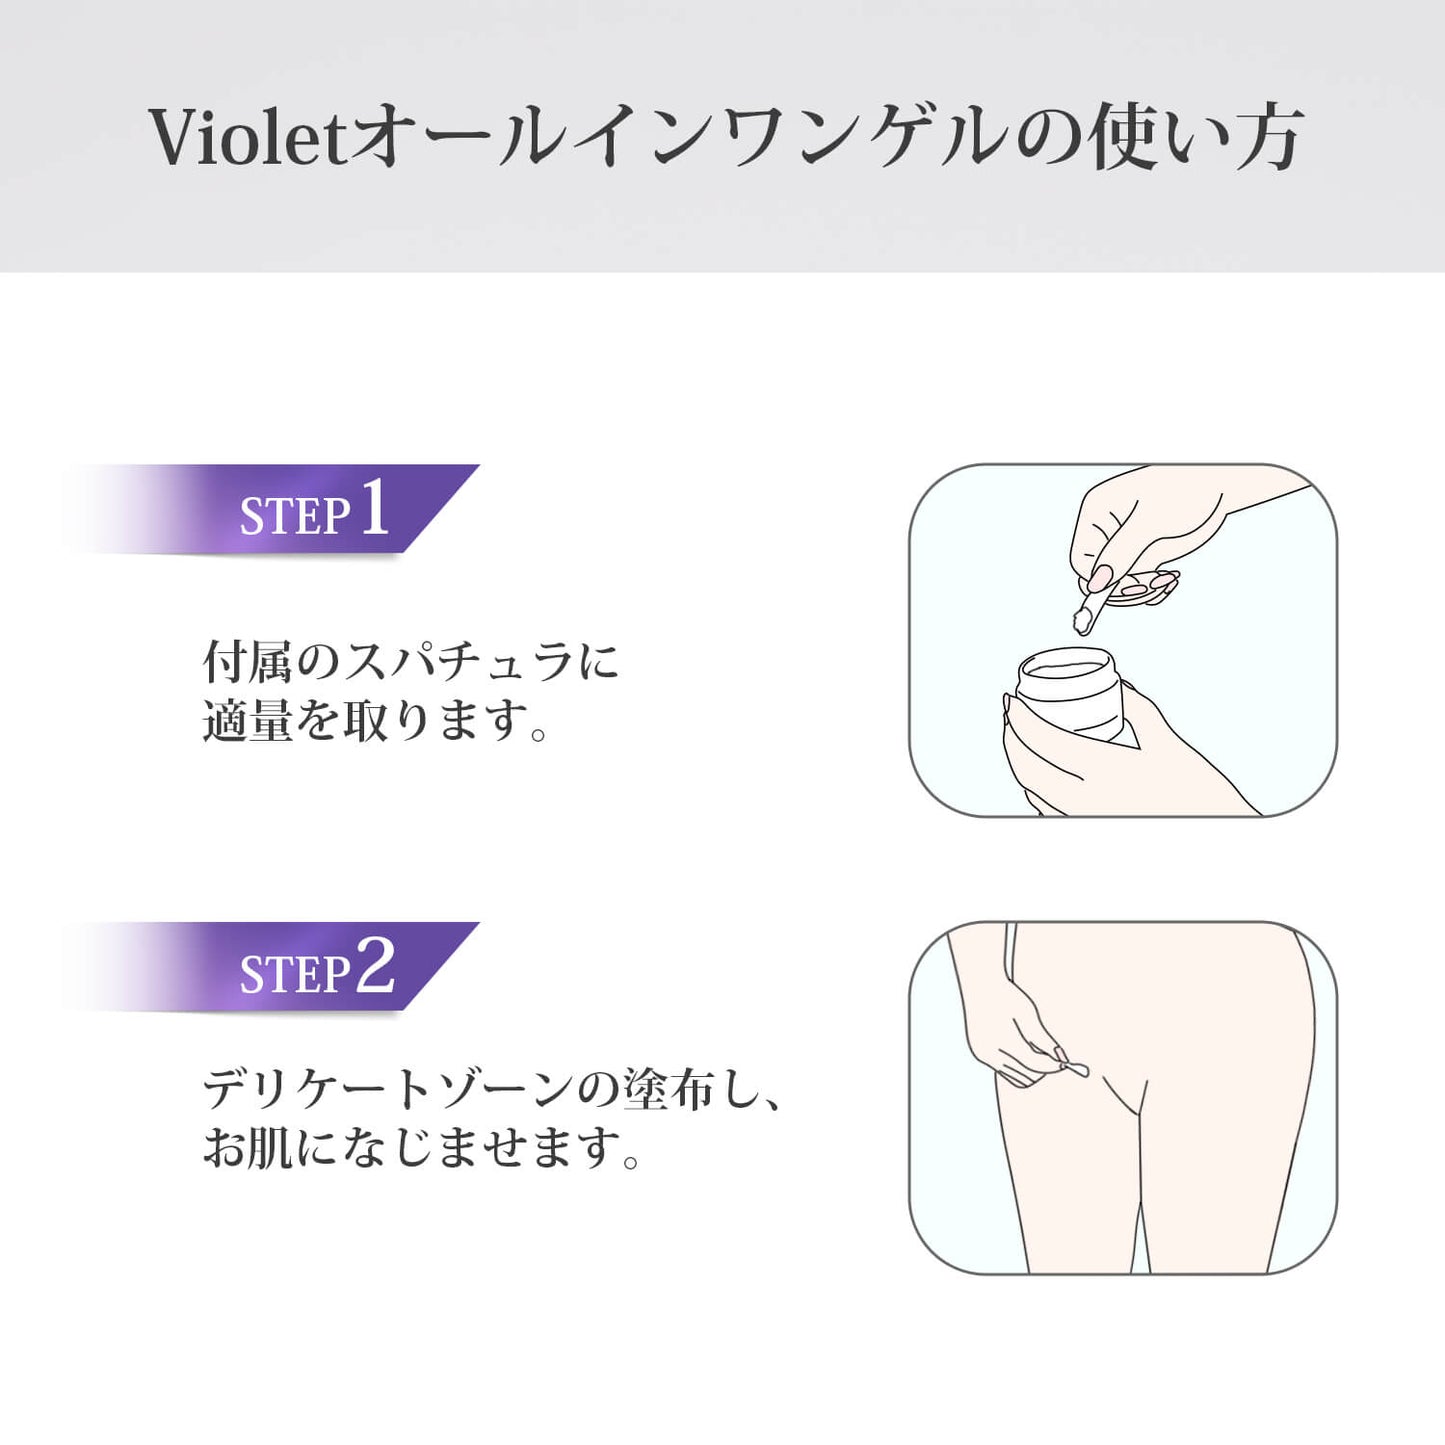 Violet デリケートゾーン専用オールインワンゲルお試し用 (15ml)